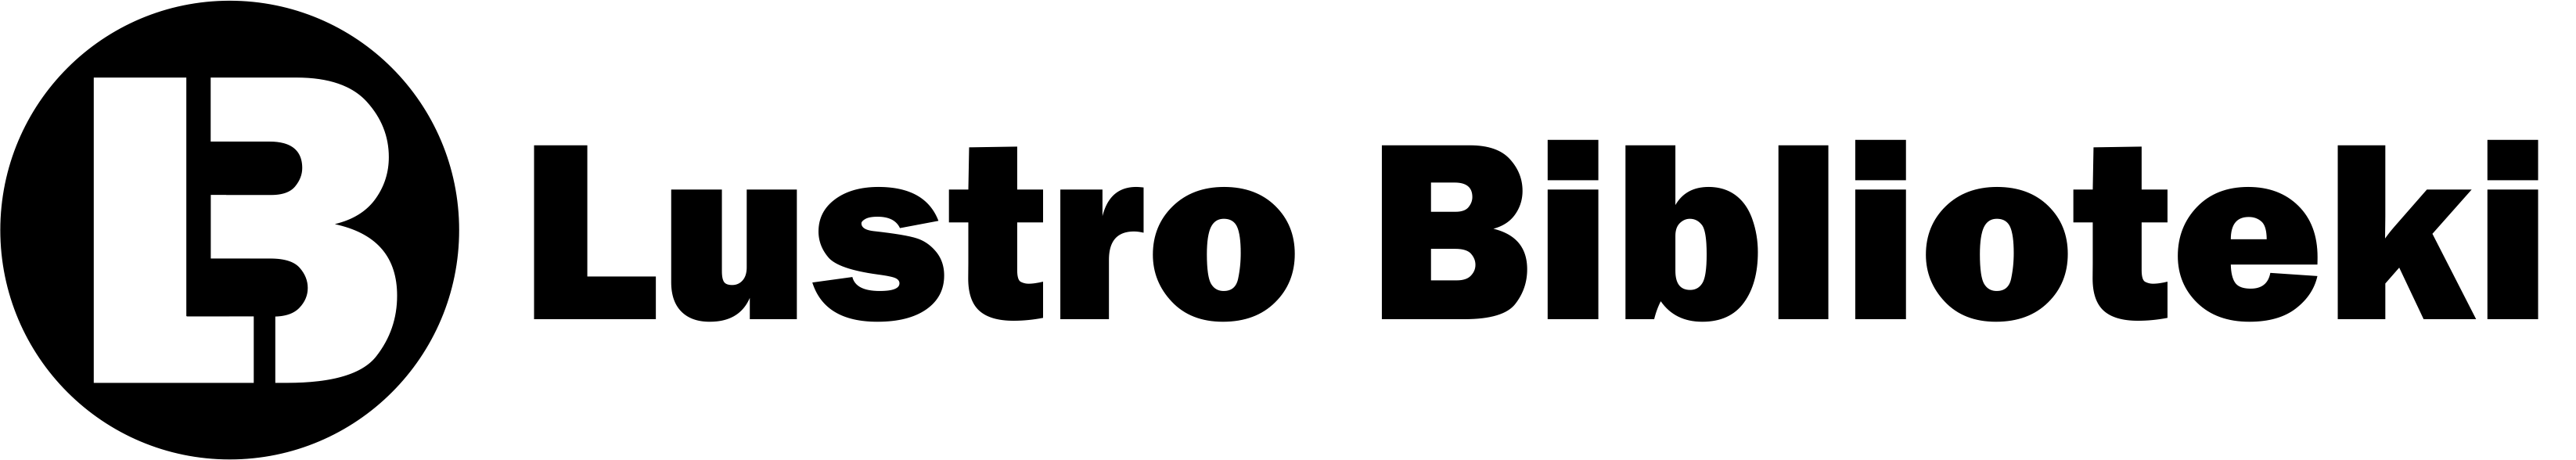 Lustro Biblioteki logotyp wersja podstawowa1 1